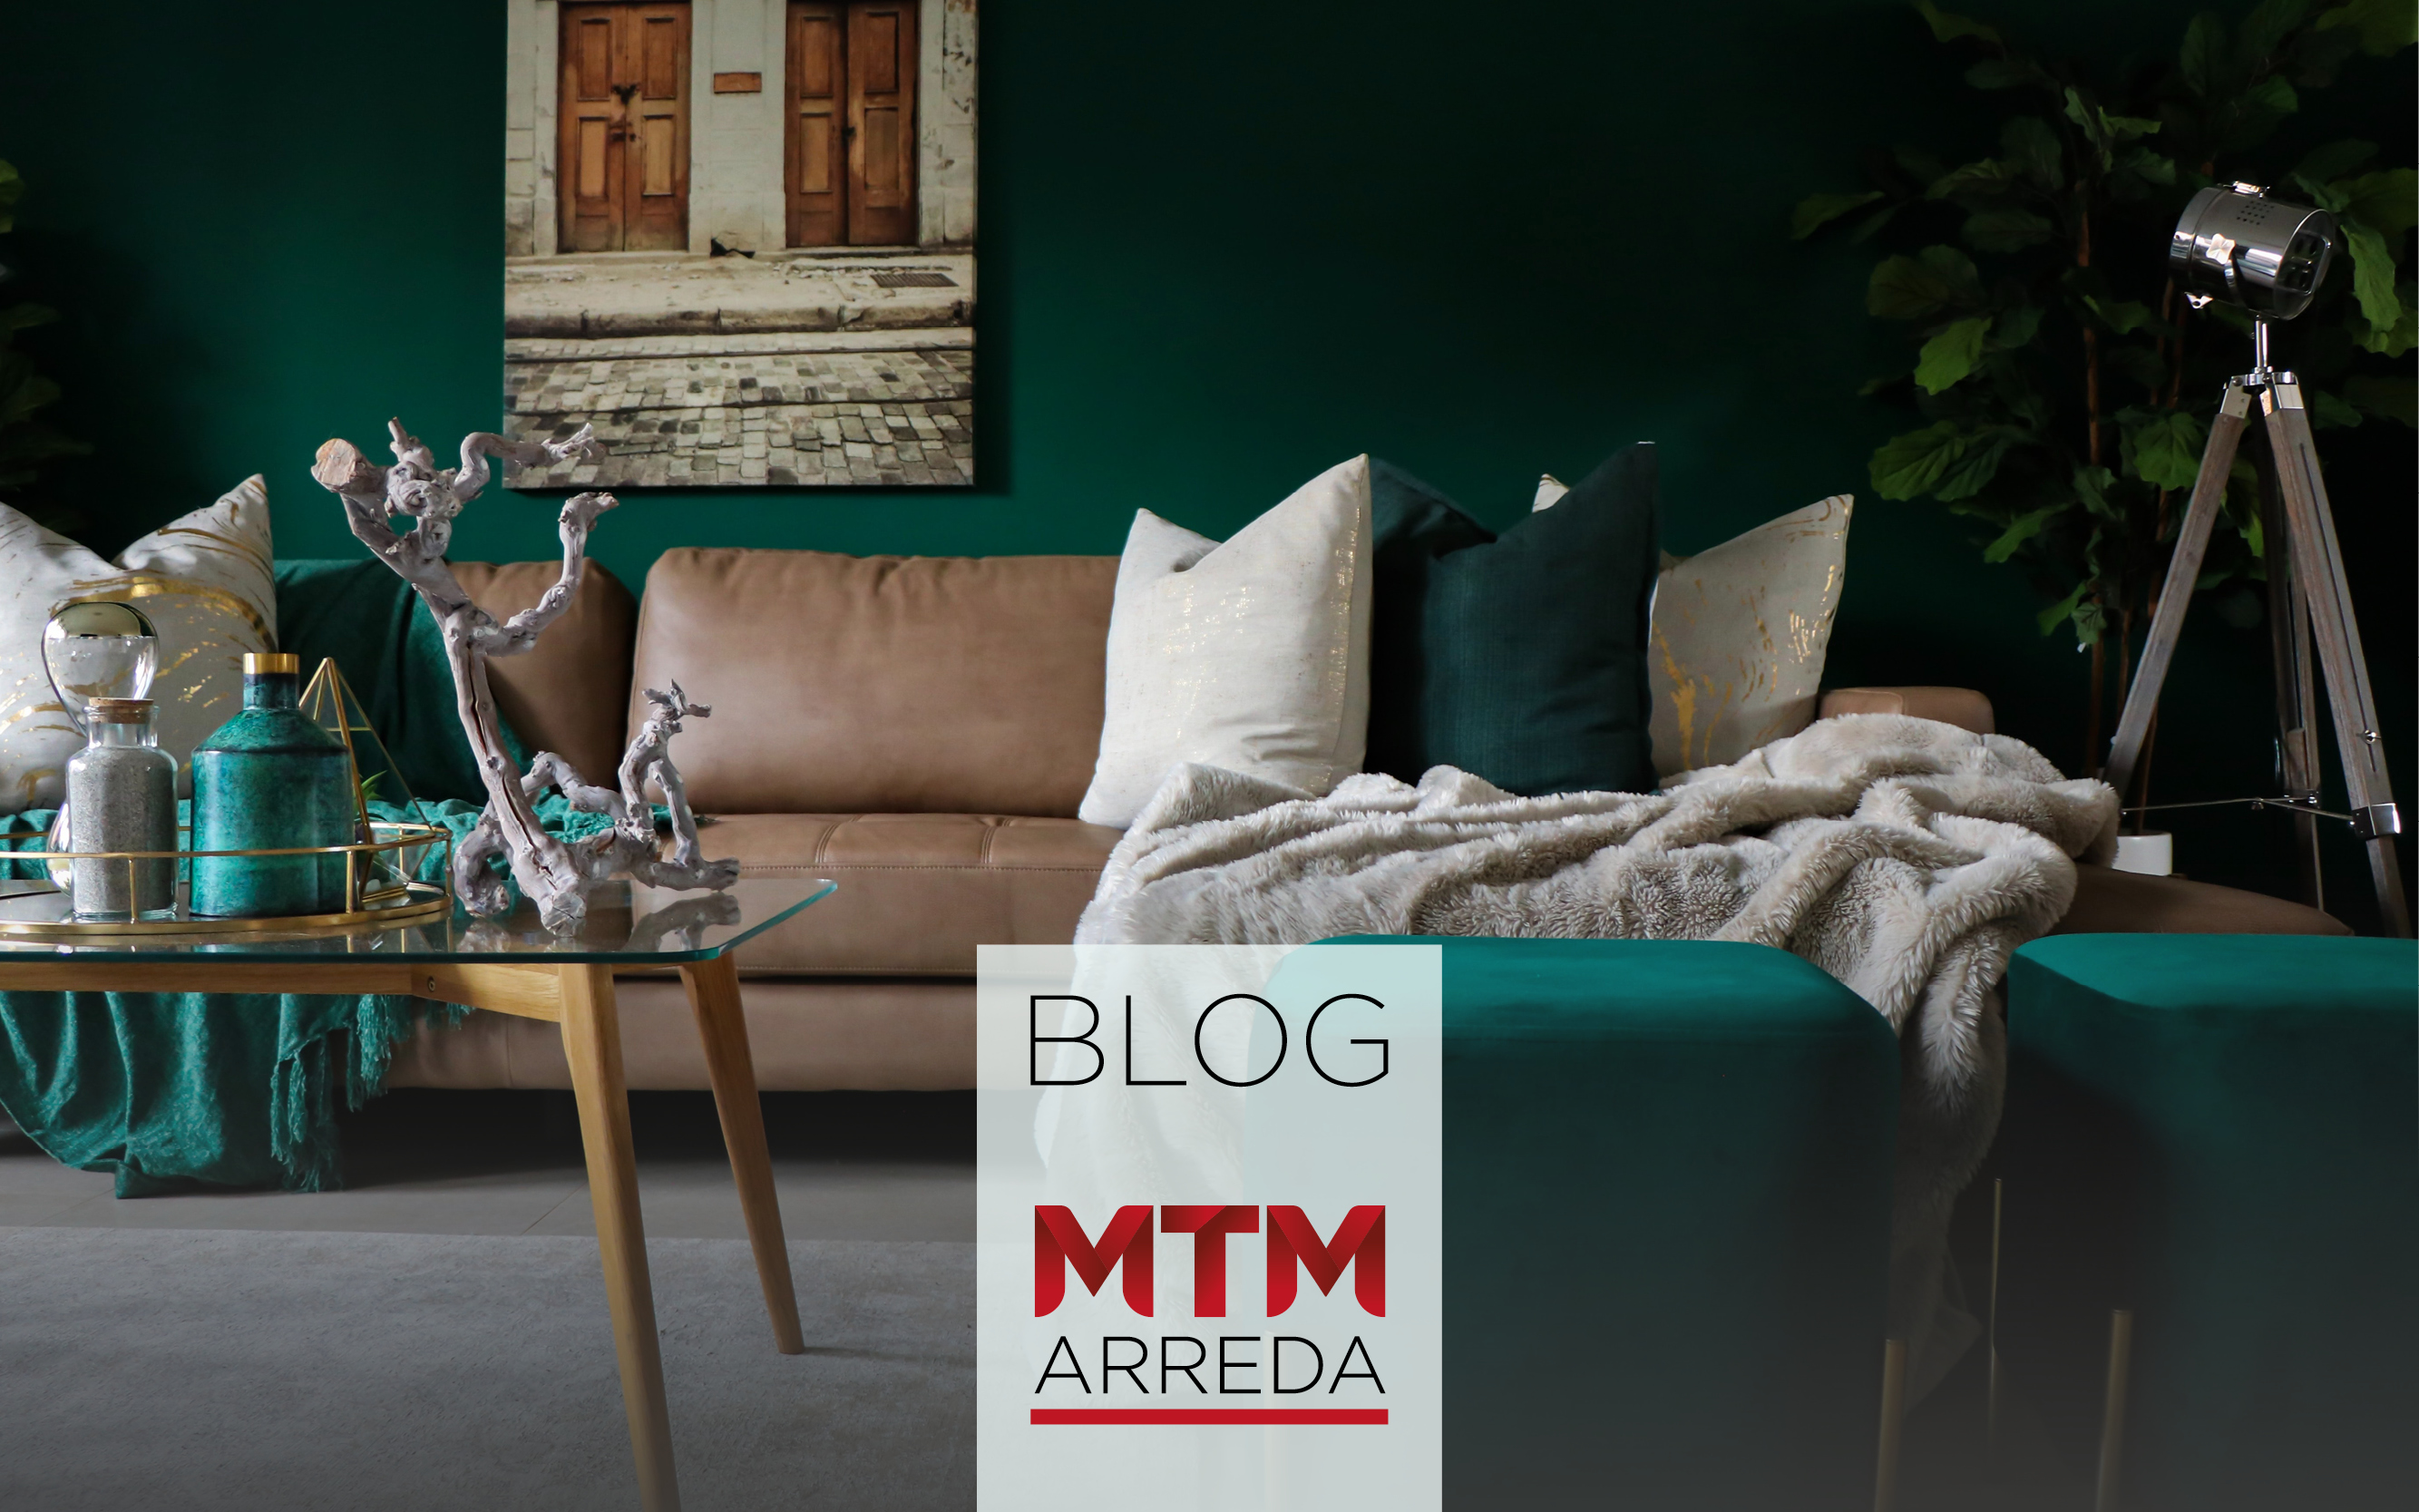 MTM-arreda-Blog-tendenza-arredo-21